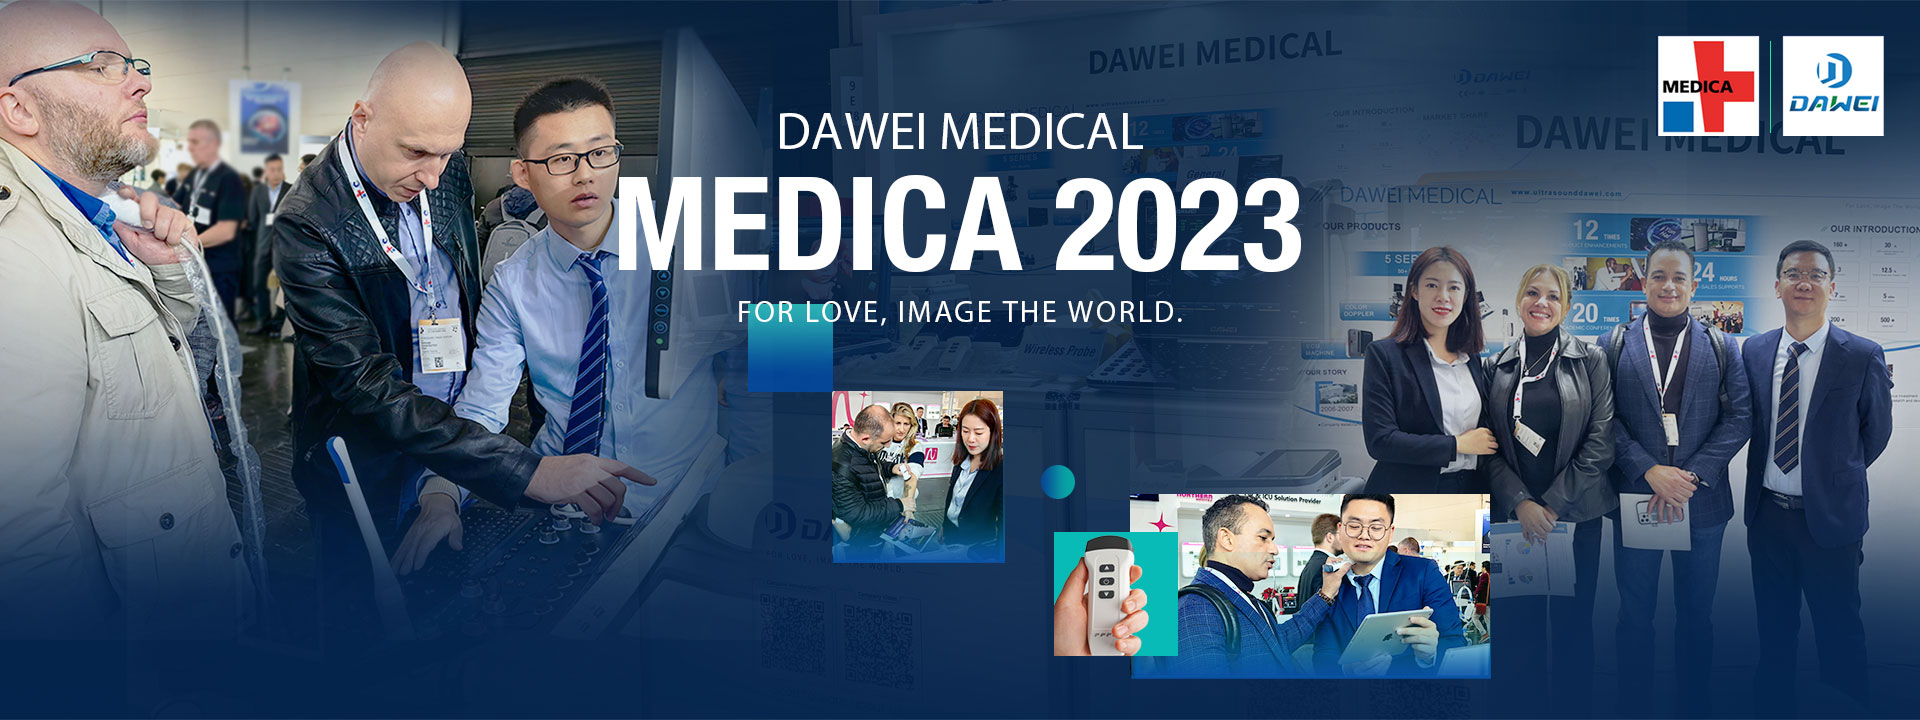 Medica Expo 2023 Update